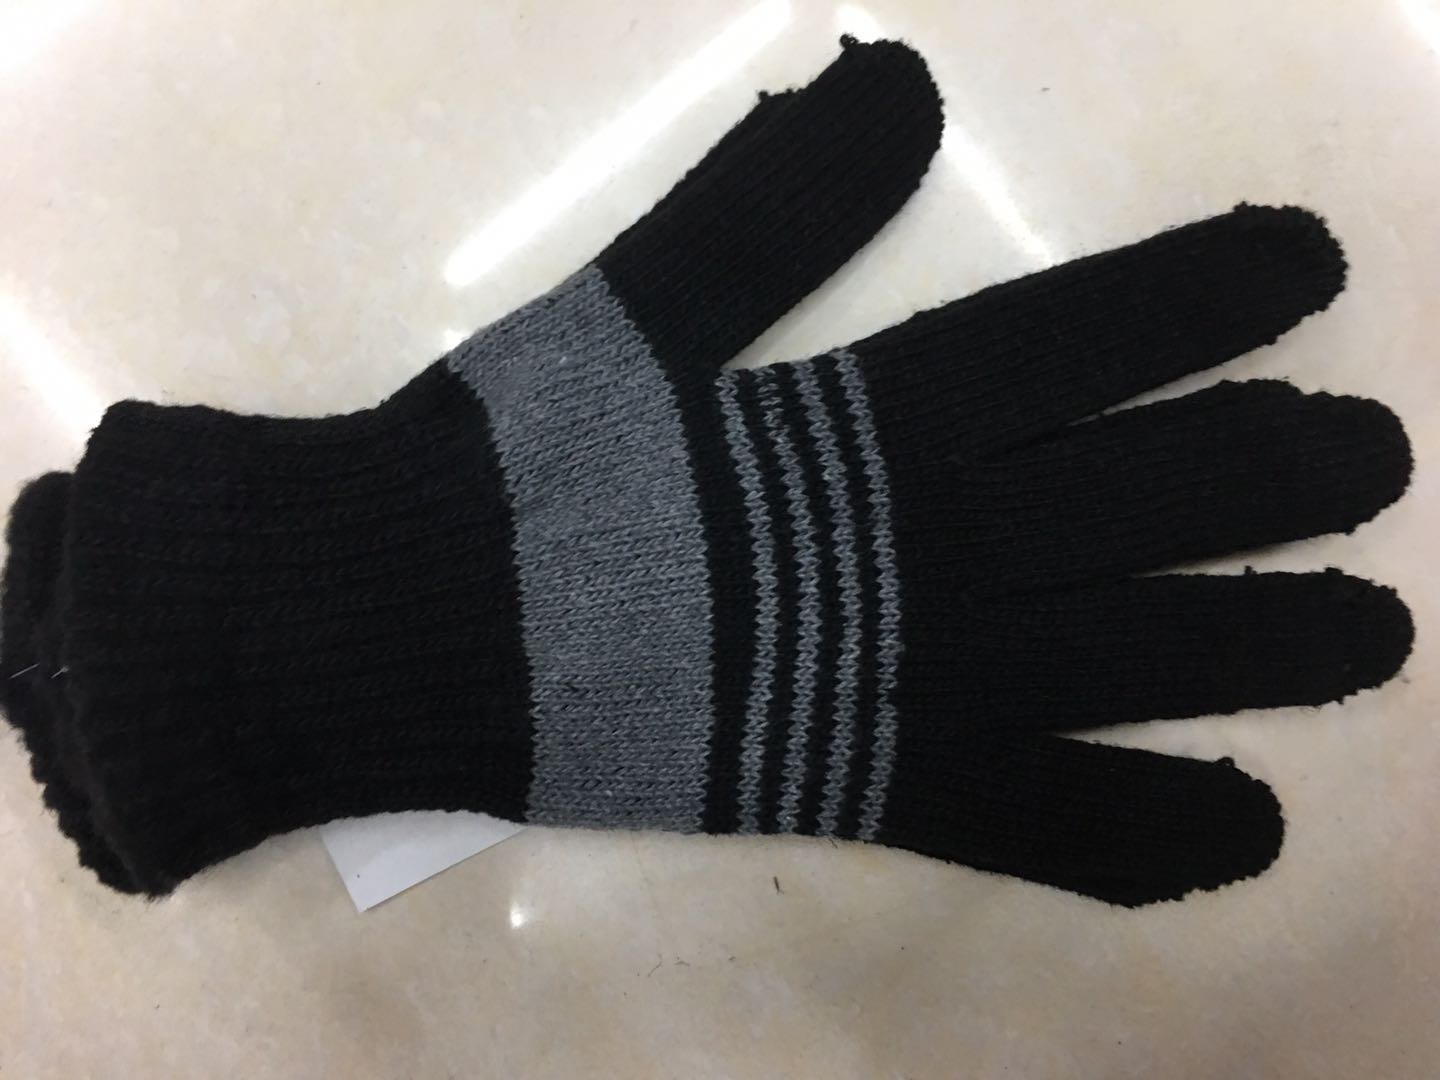 手套冬季保暖 触摸屏手套 地摊针织手套低价批发2元超市供应图